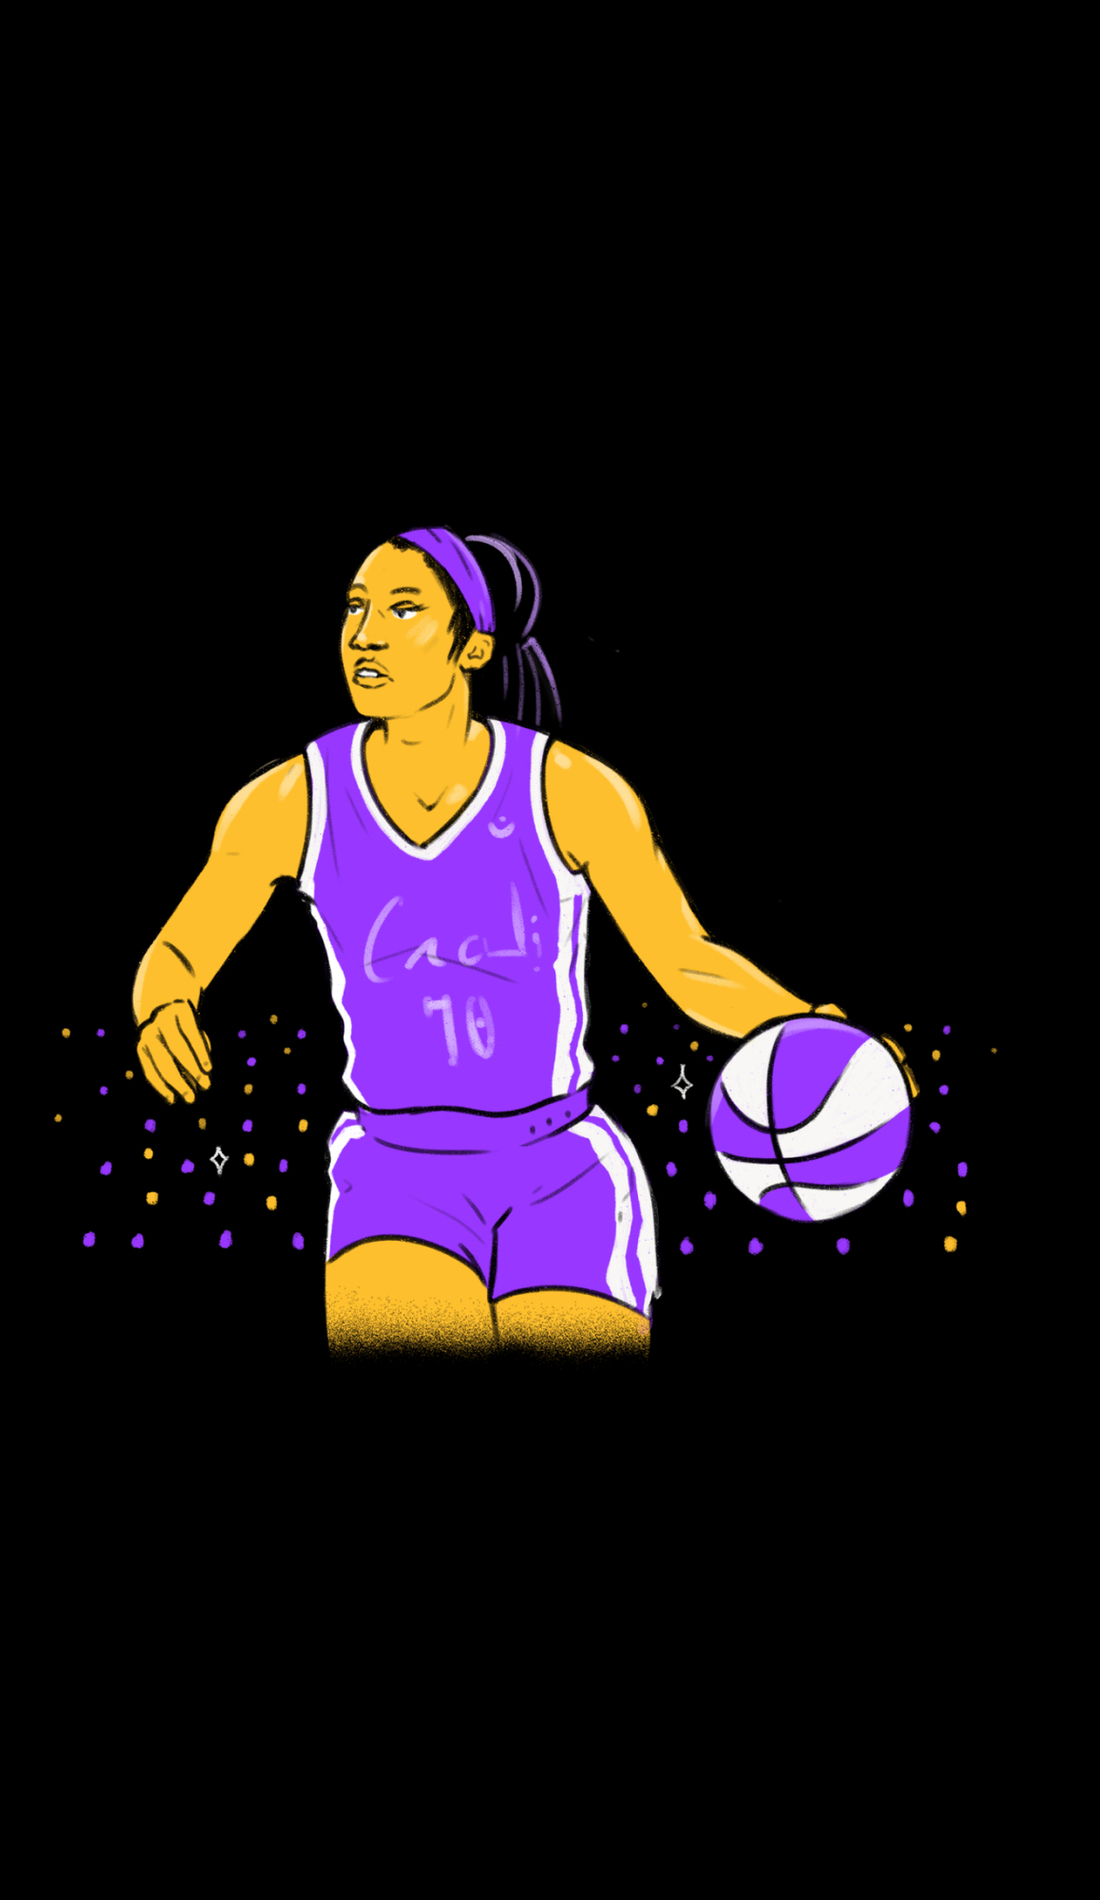 A WNBA Finals live event